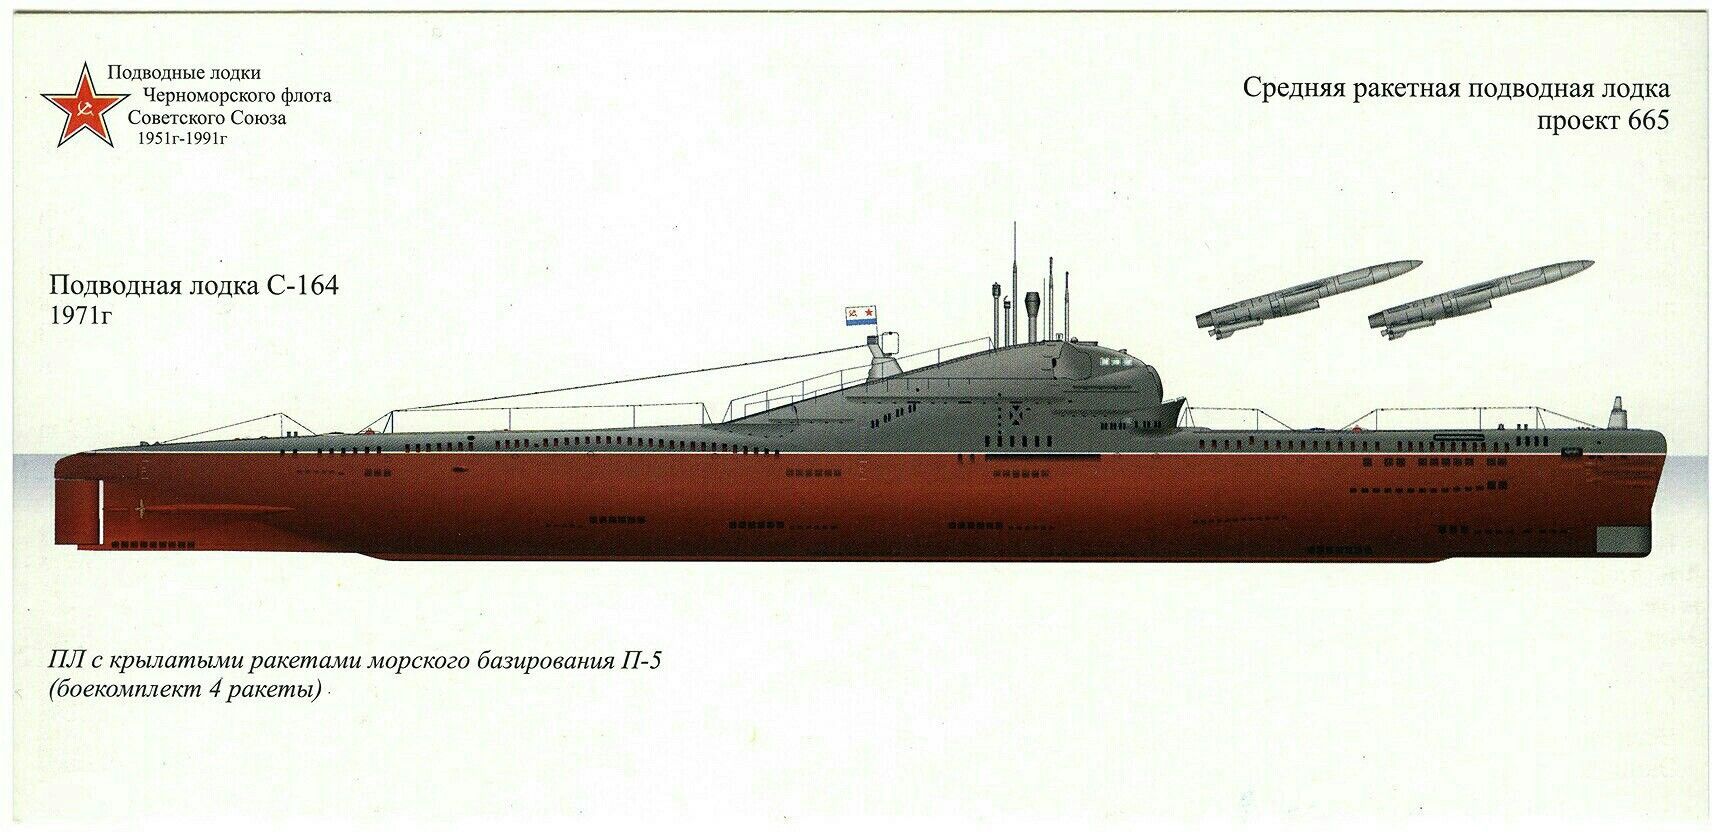 «хаски» – российская субмарина пятого поколения